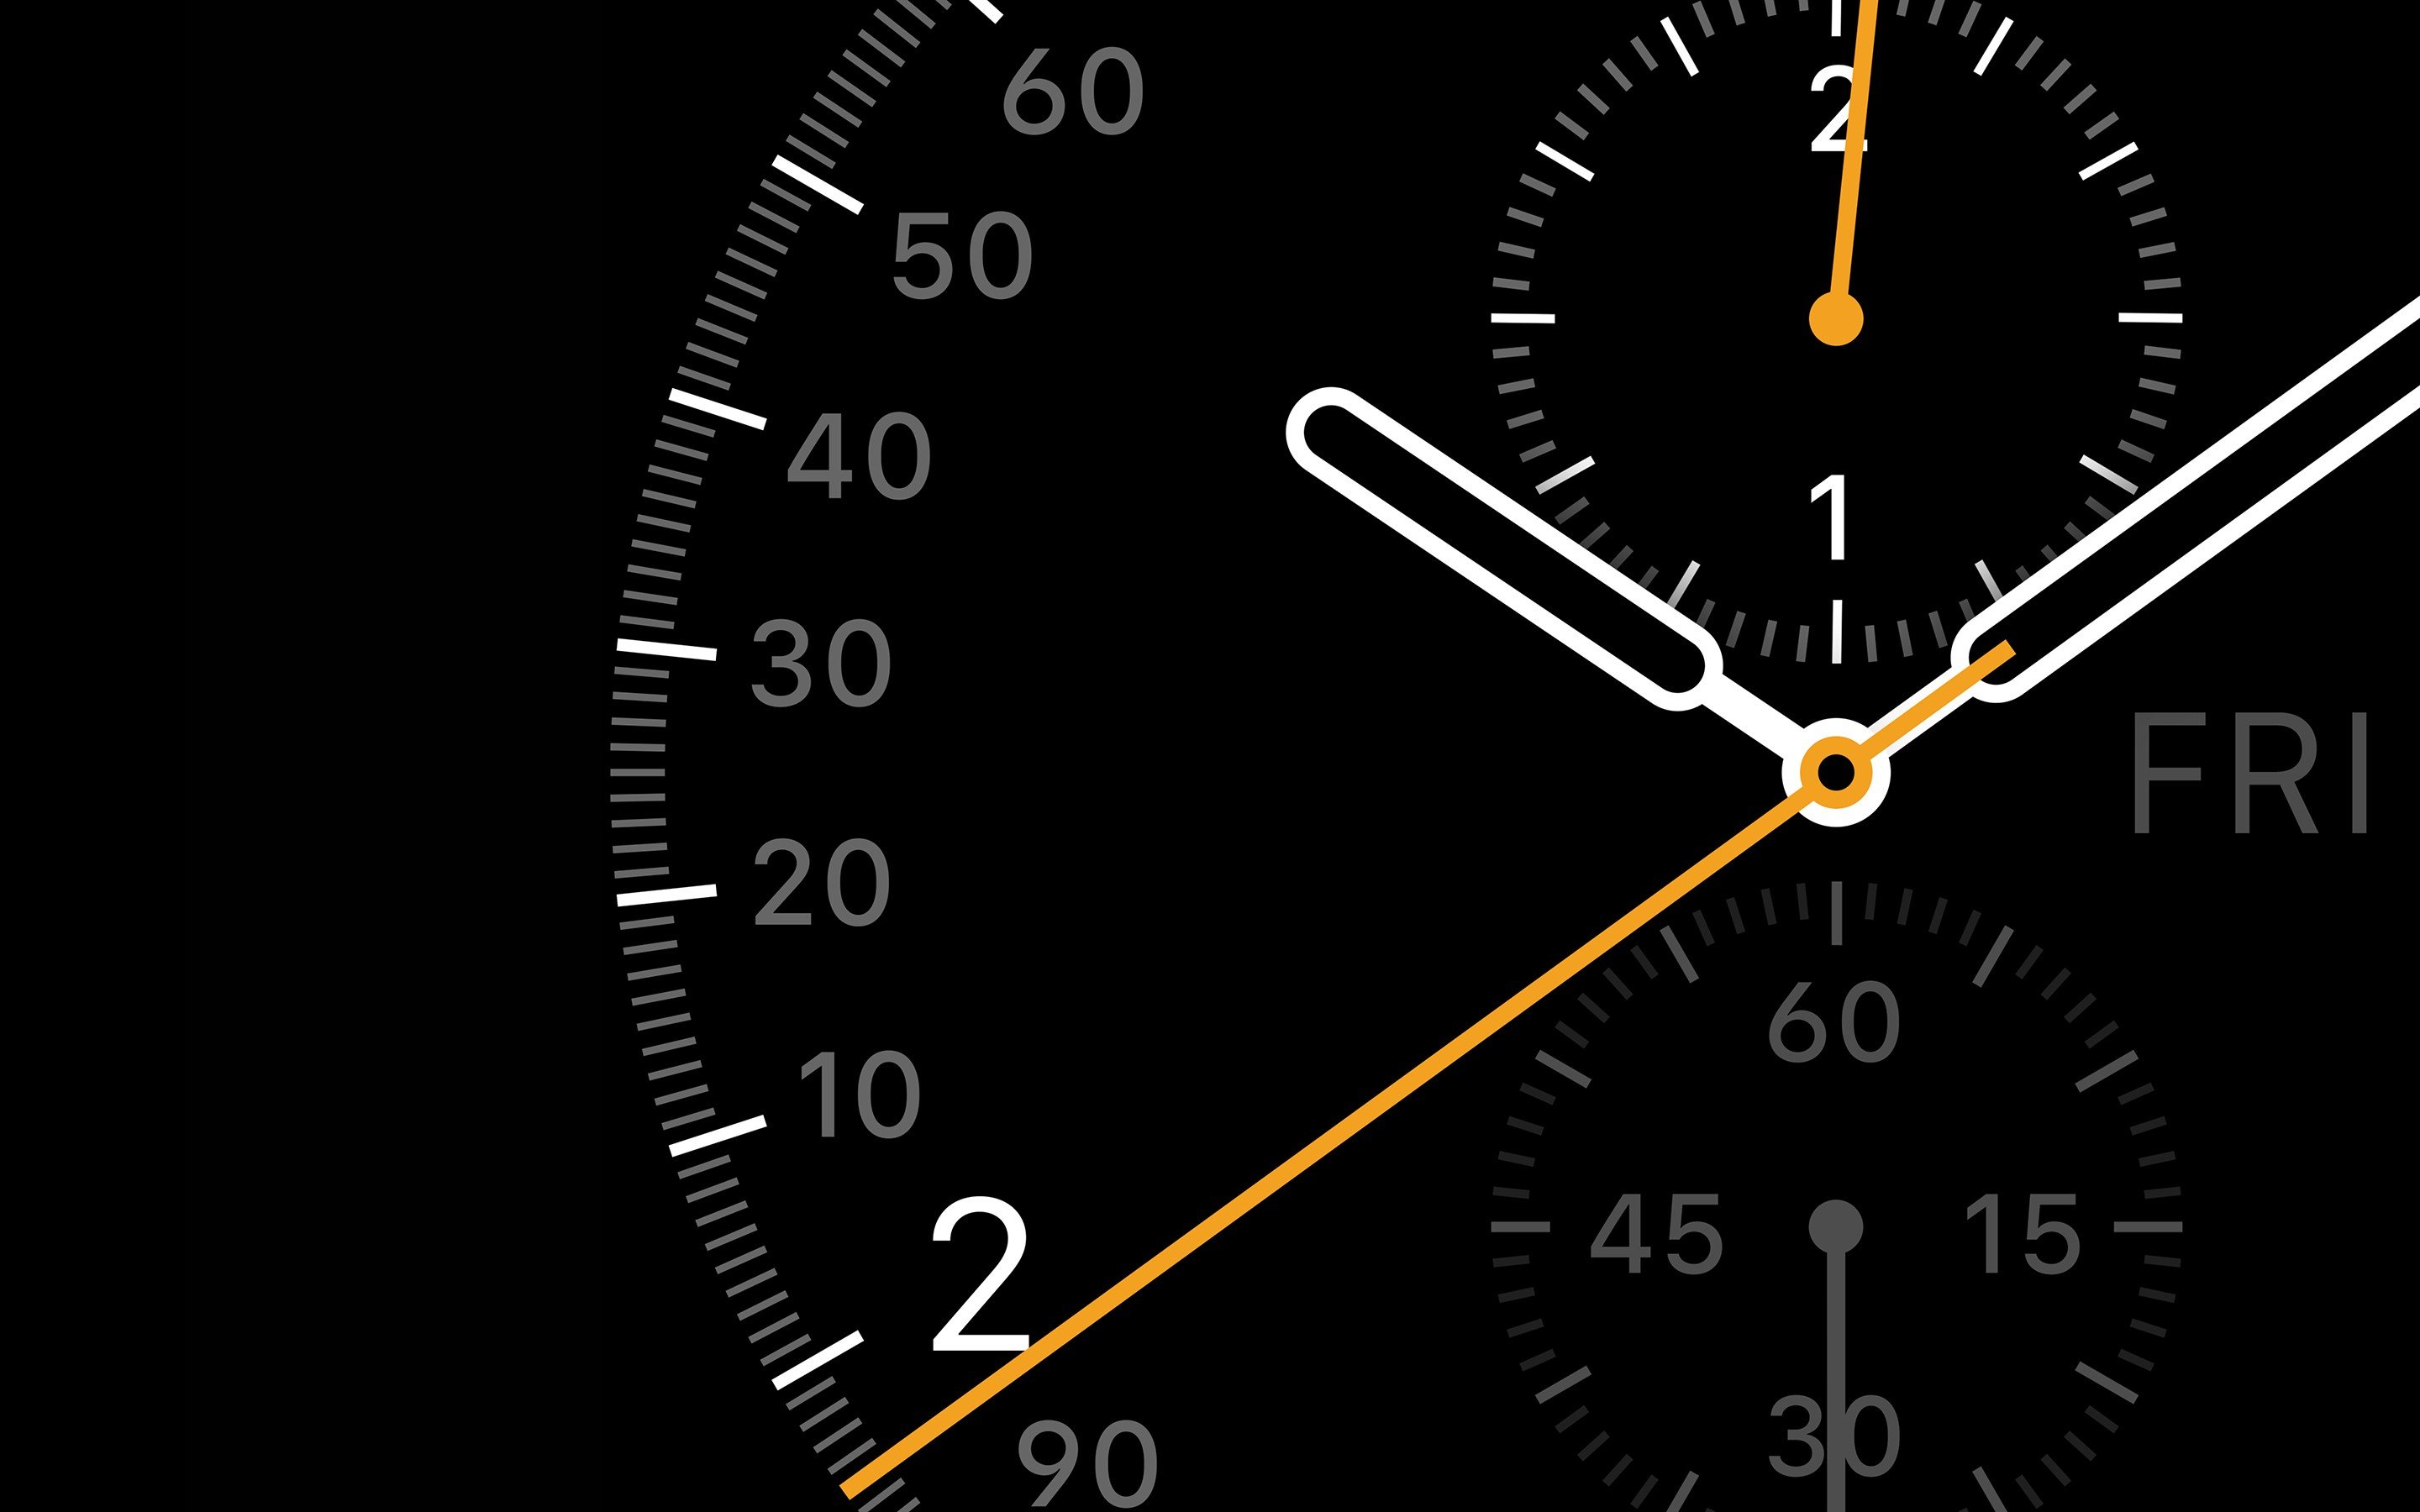 Dành cho những người đam mệ danh hình, đồng hồ Apple Watch của bạn sẽ trở thành một bảng điện tử nhỏ nếu chỉnh sửa hình nền. Tại đây, bạn có thể tìm kiếm những bức ảnh Wallpapers độc đáo và đẹp mắt cho Apple Watch của bạn để làm nổi bật chiếc đồng hồ của mình.